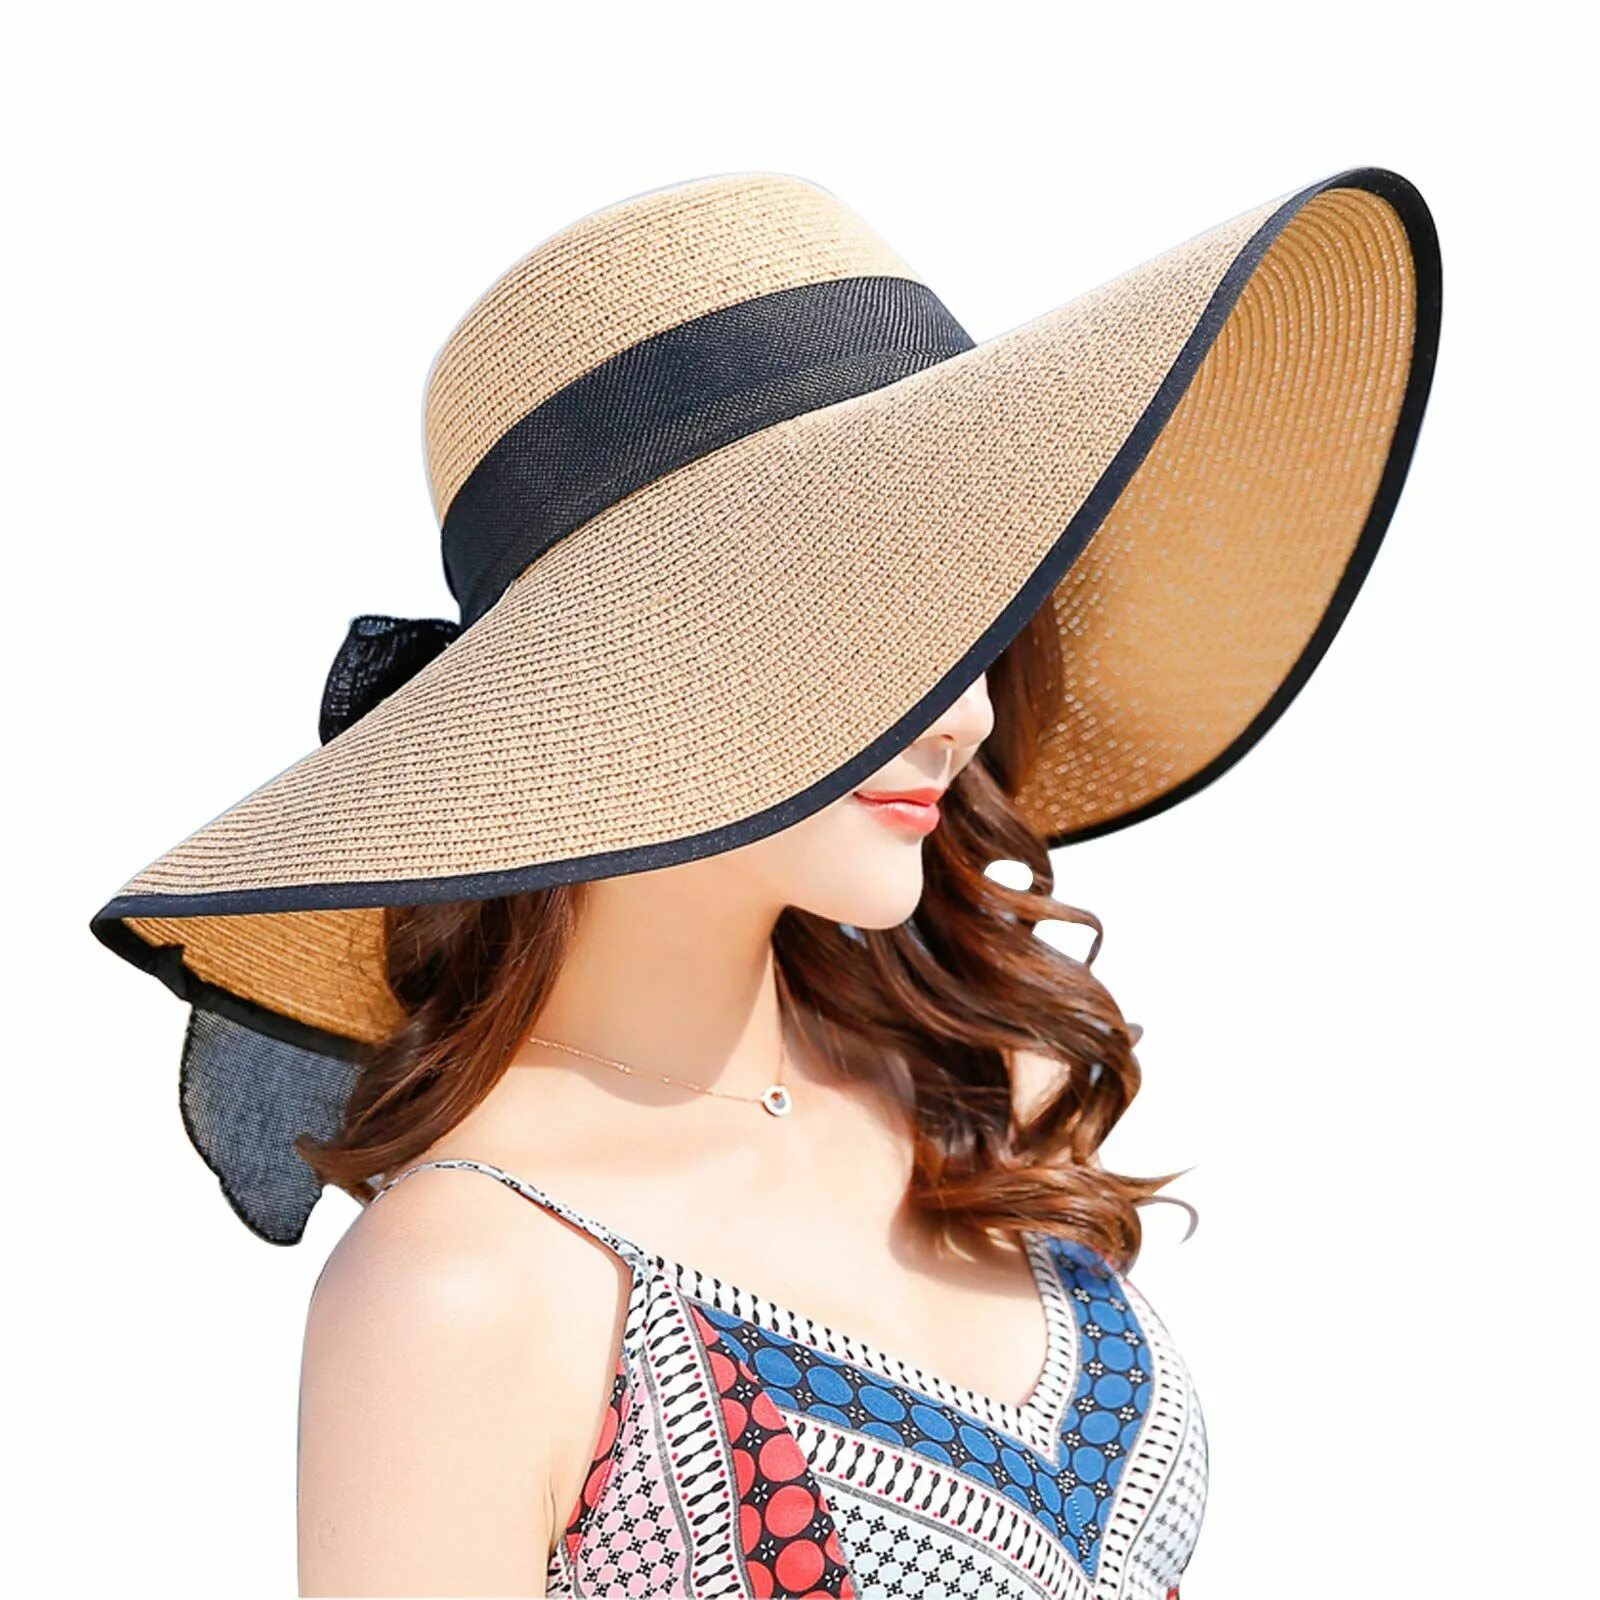 Панама широкополая женская. Широкополая шляпа Панама. Пляжная шляпа. Летняя шляпа. Девушка в большой шляпе